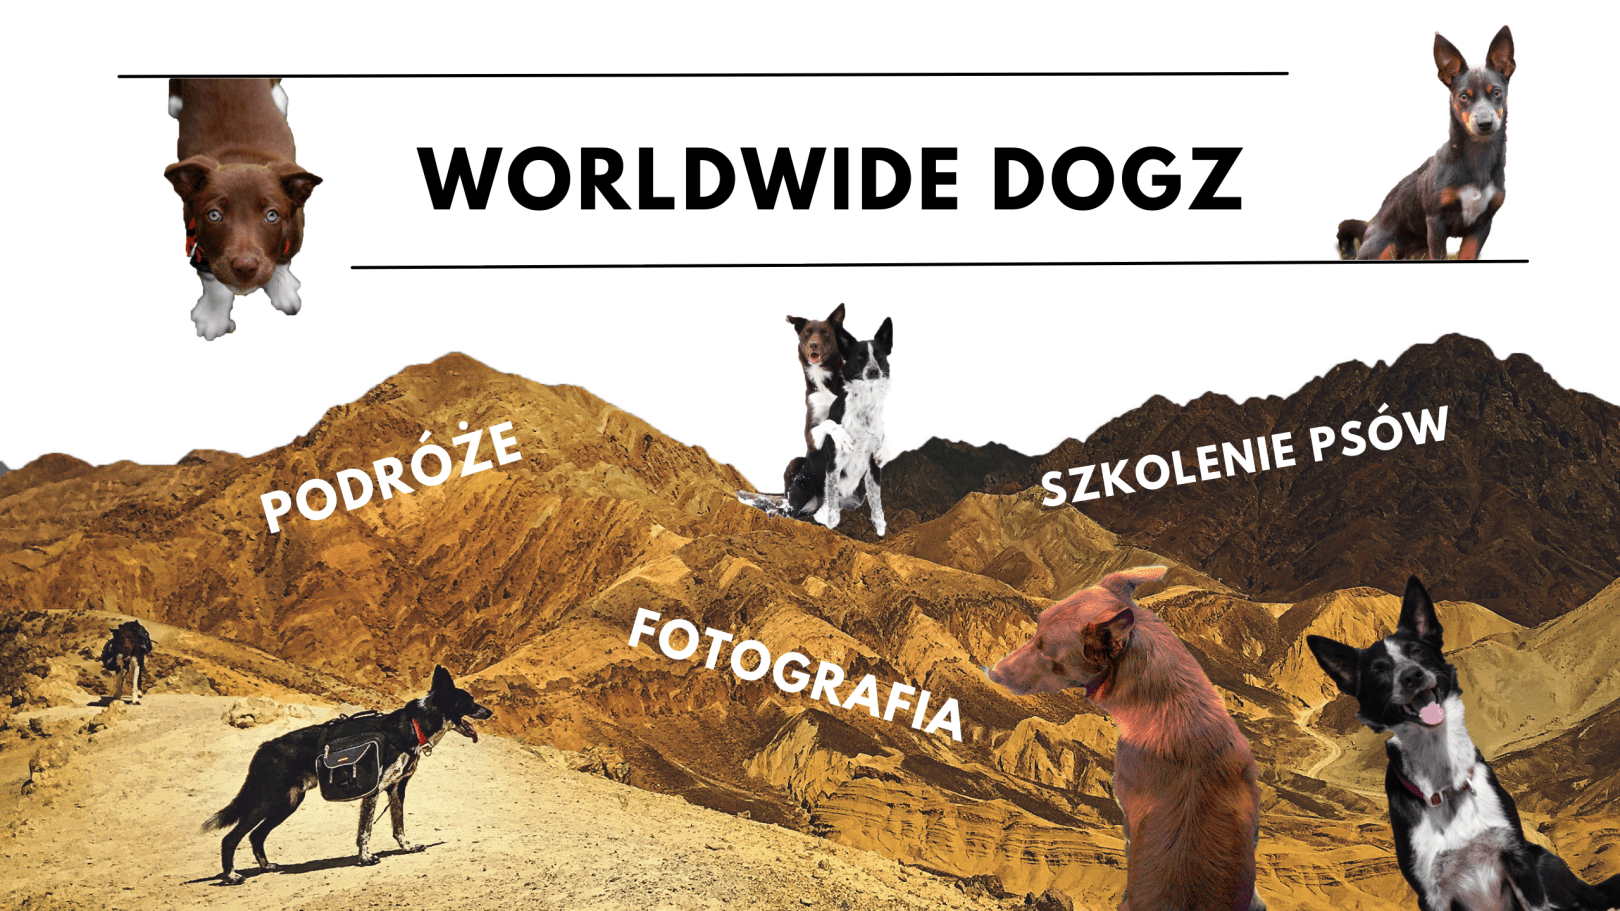 Worldwide Dogz